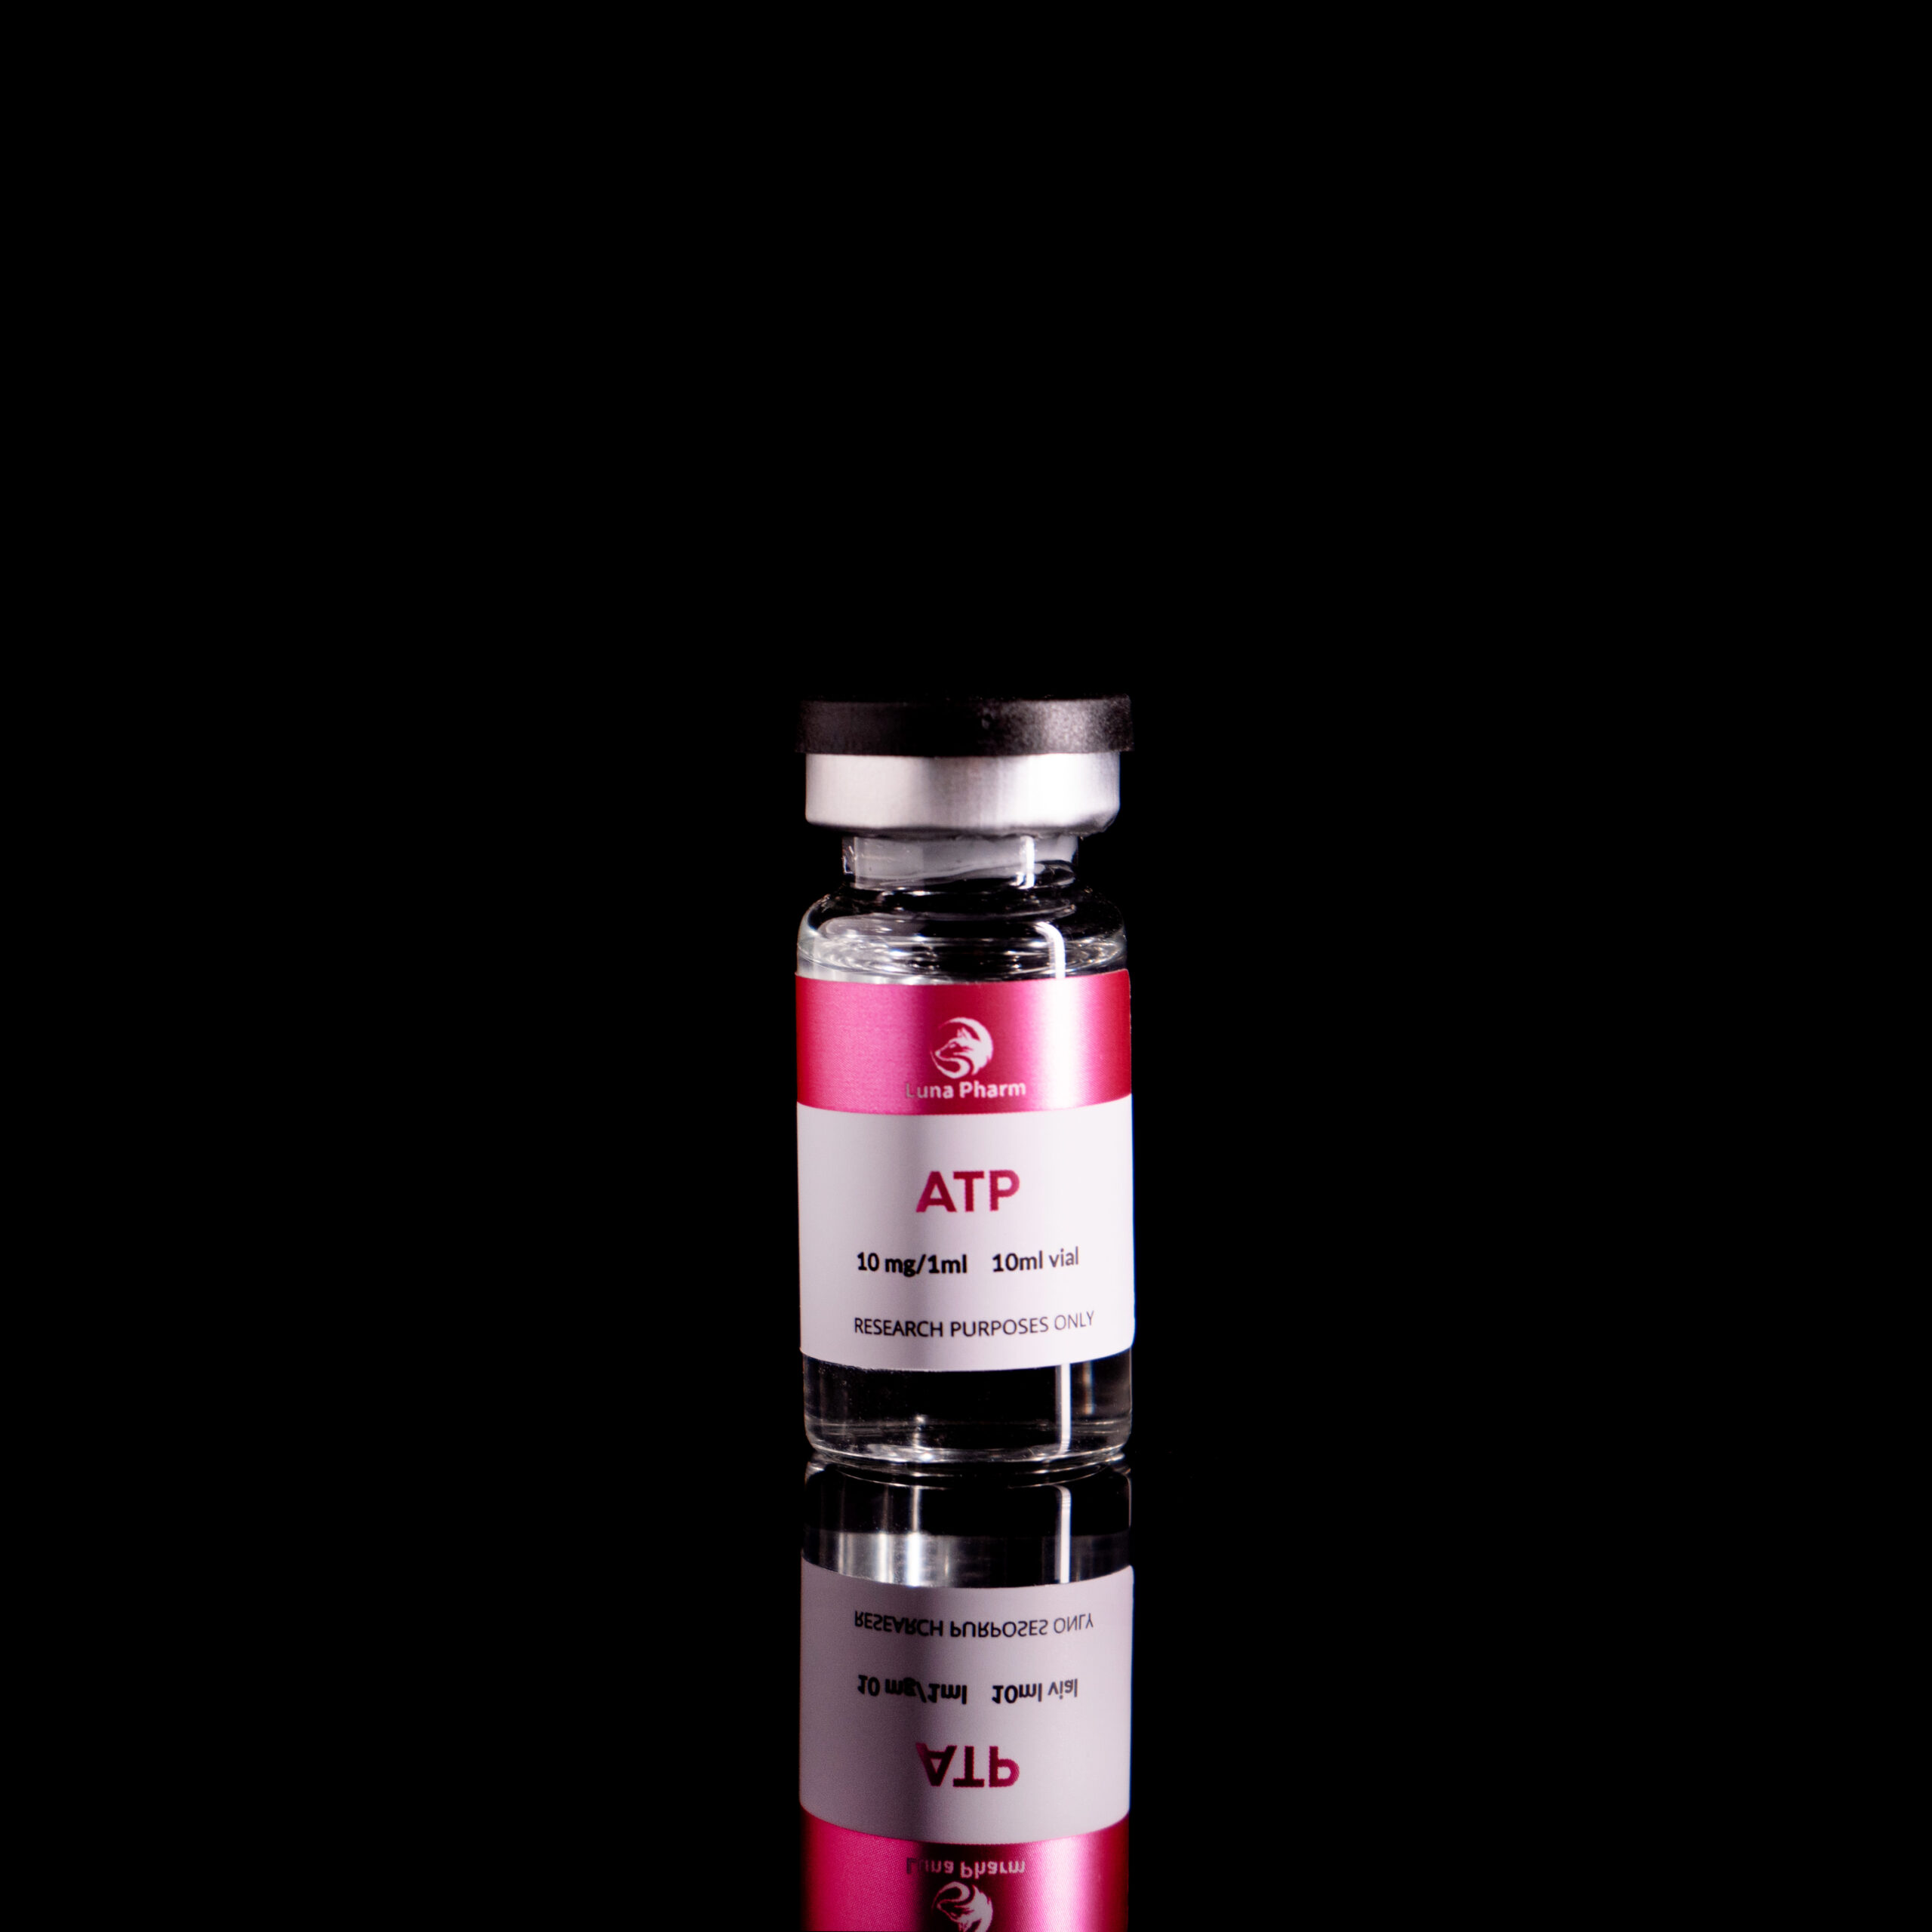 ATP 10mg/1ml  10ml vial